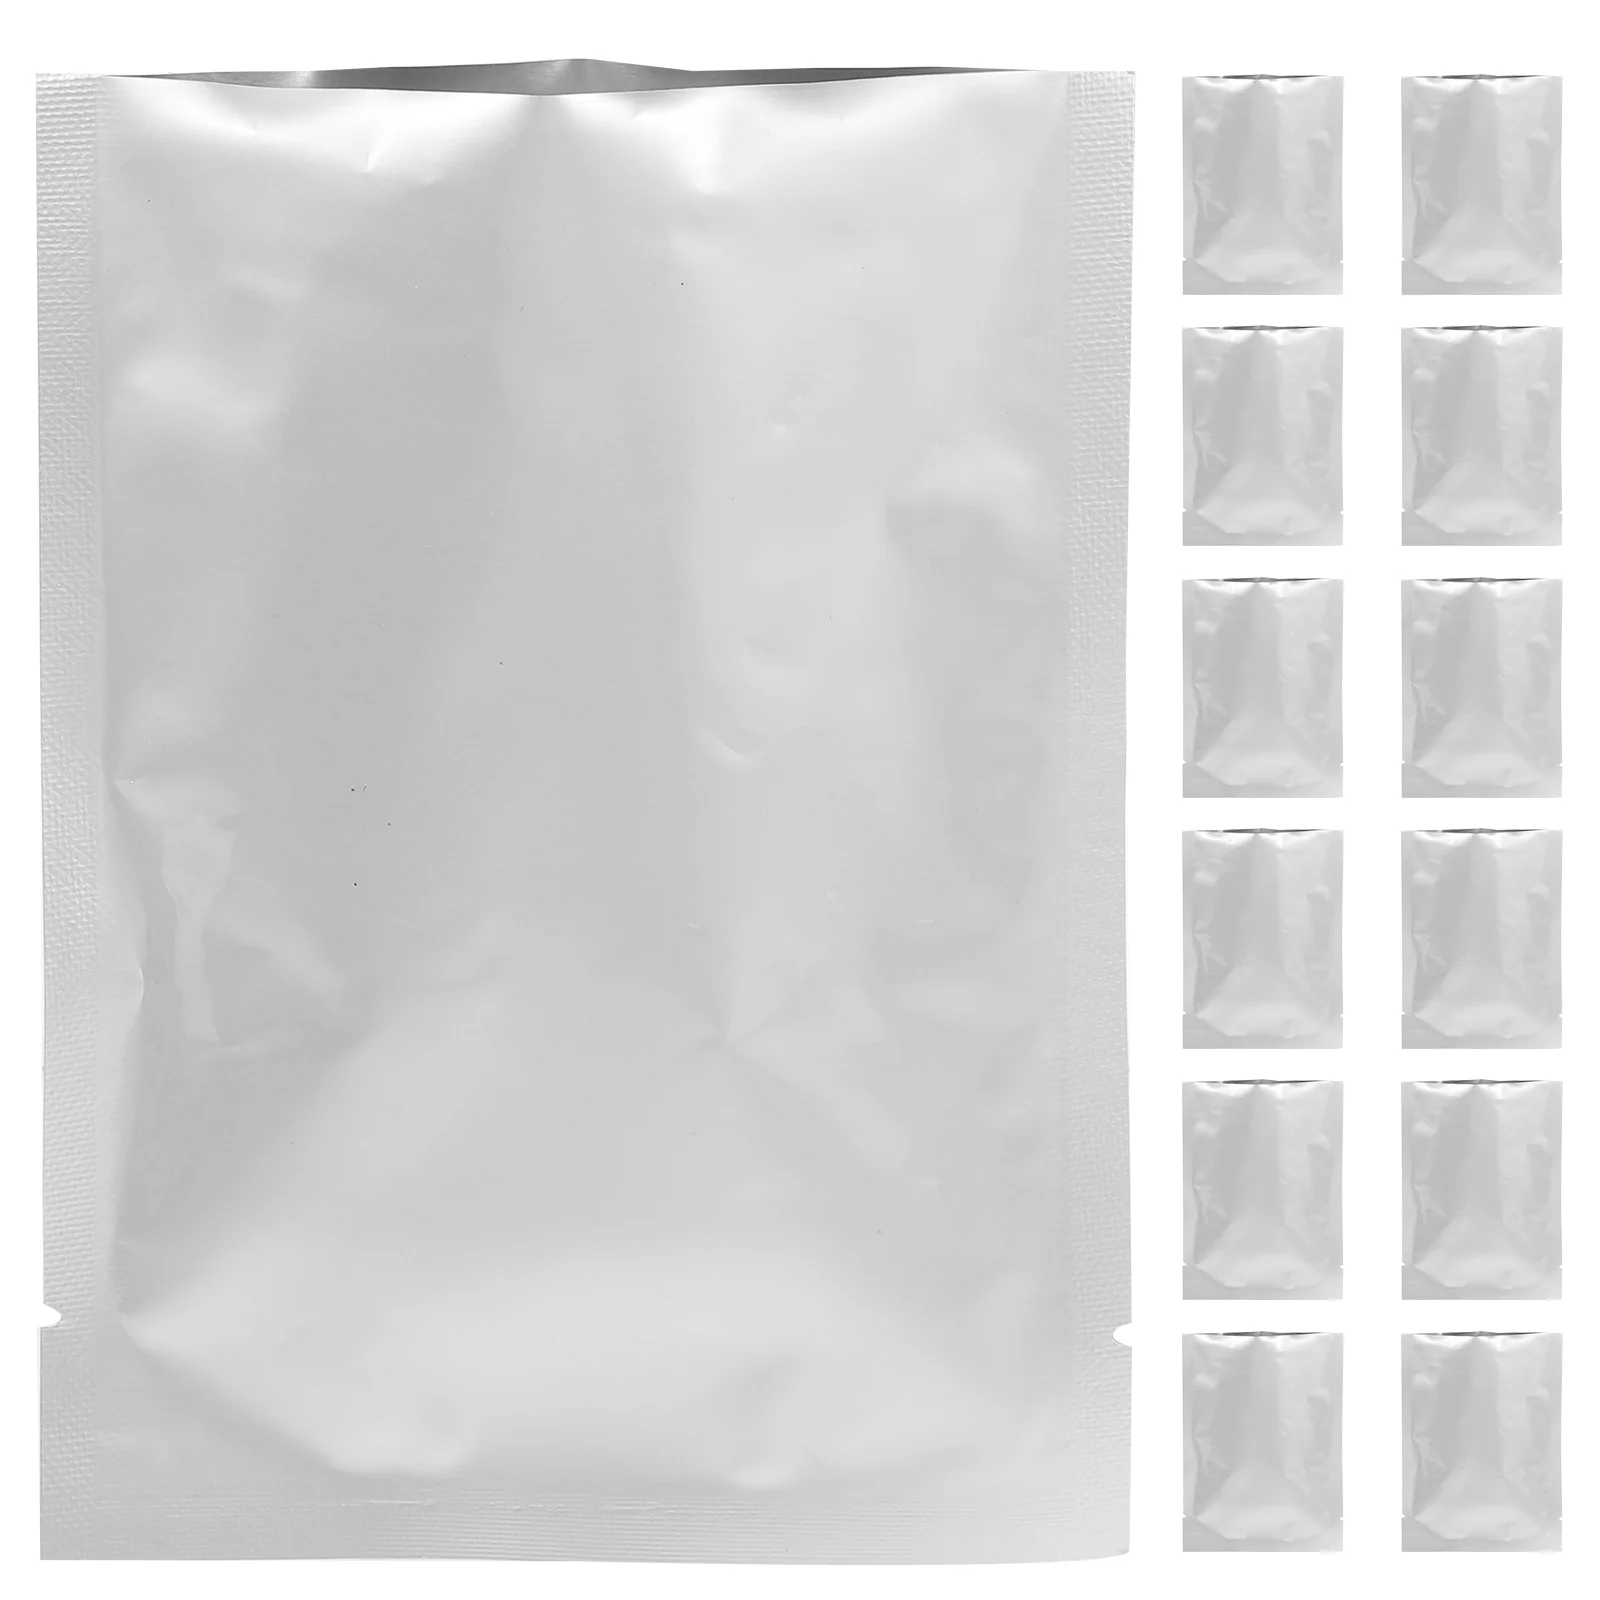 

50 Pcs Foil Bag Vacuum Bags Sealer For Small Business Packaging Treat Snack Aluminum Packing Bulk Practical Food